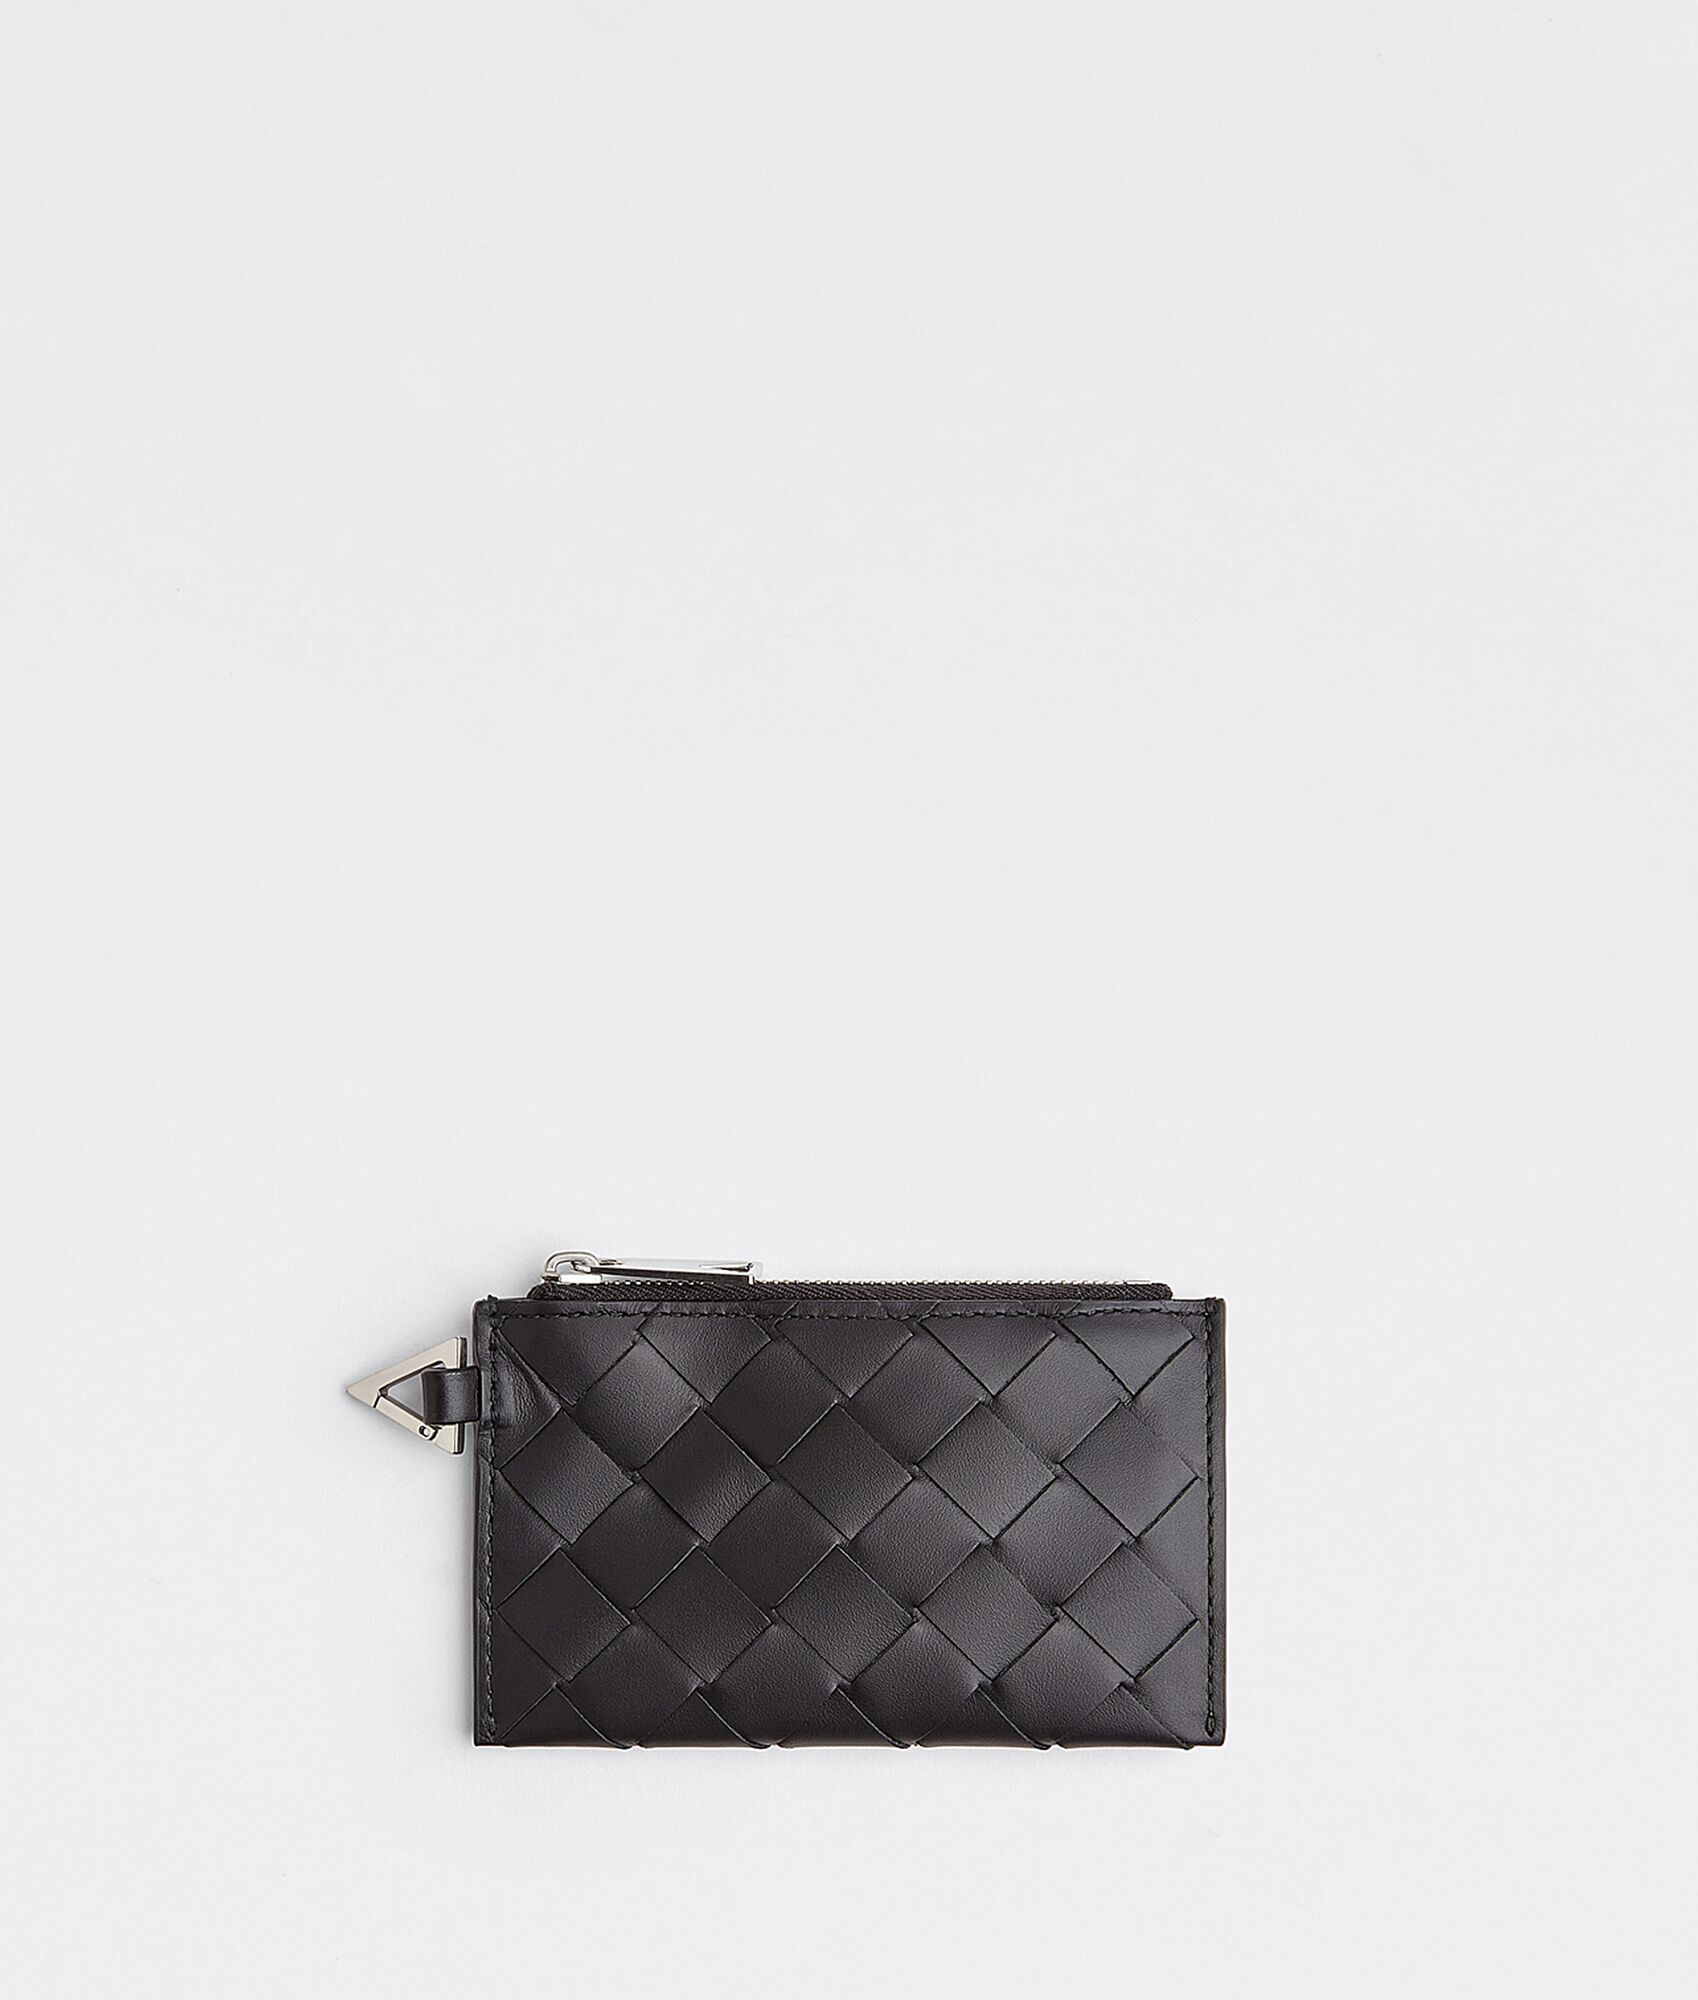 Bottega Veneta® Women's Zipped Card Case in Black. Shop online now.